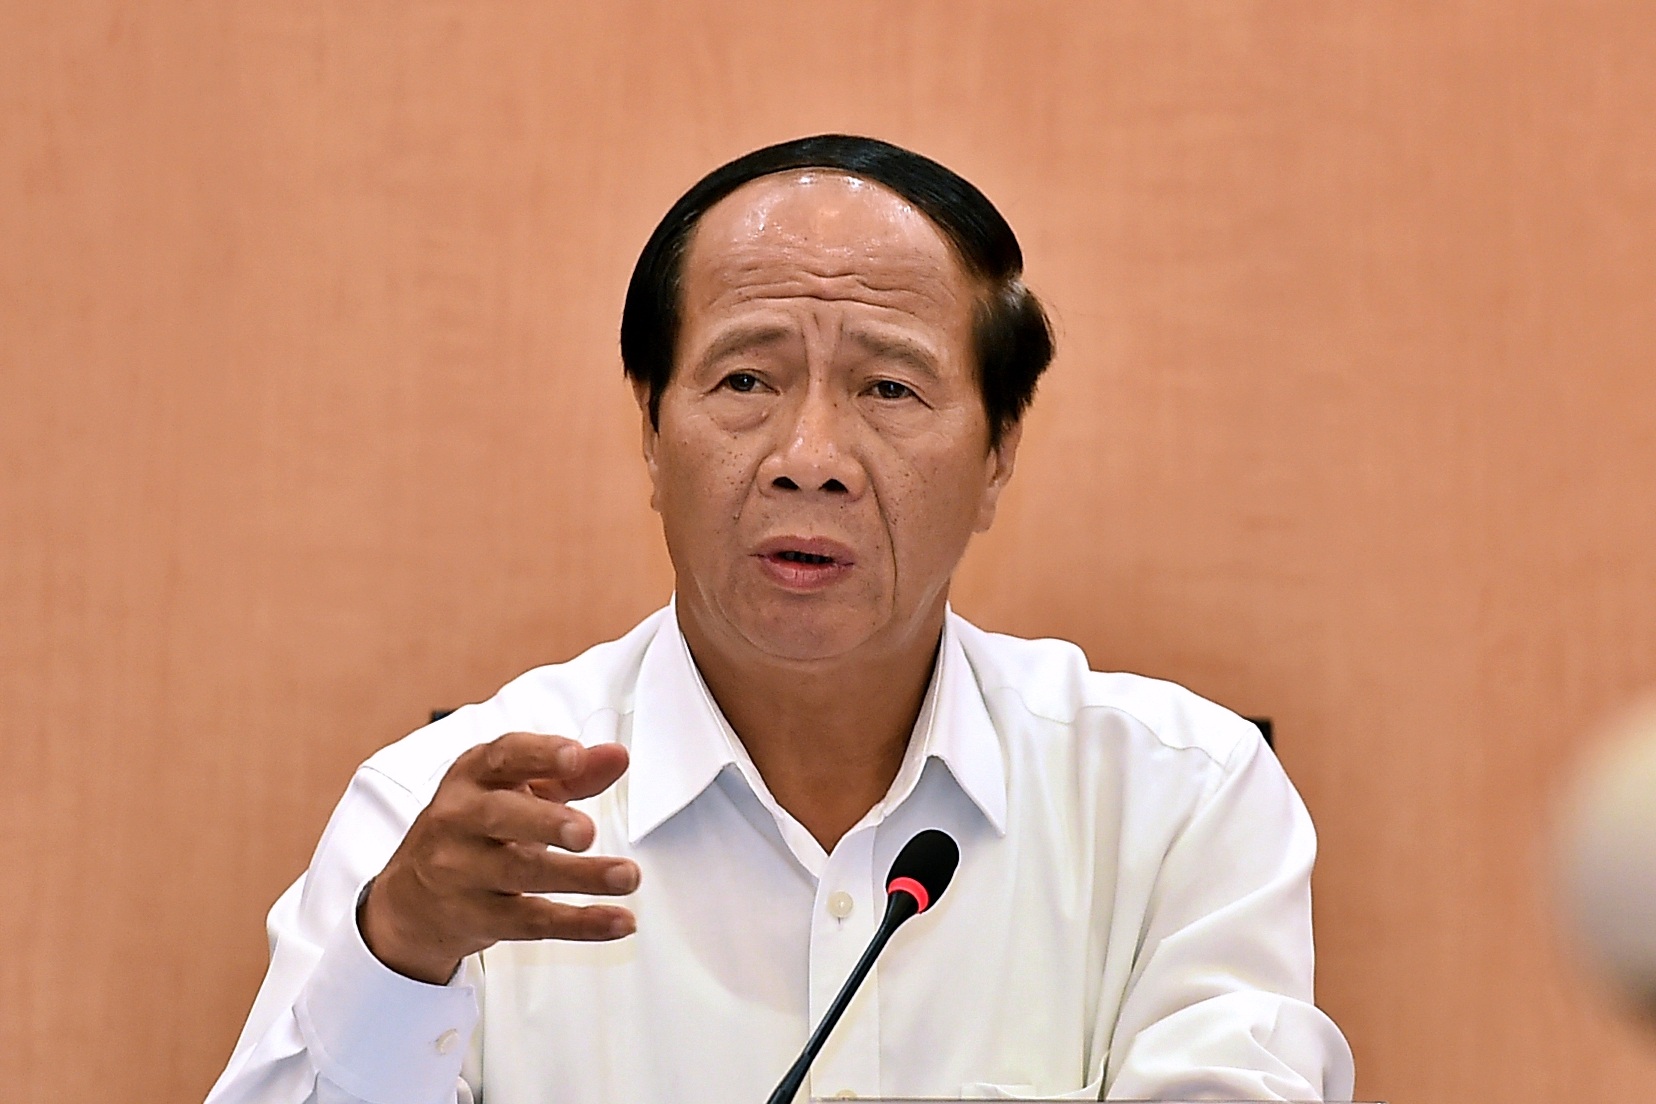 Phó Thủ tướng cầm tay chỉ việc để giải ngân đầu tư công Hà Nội khởi sắc - 1